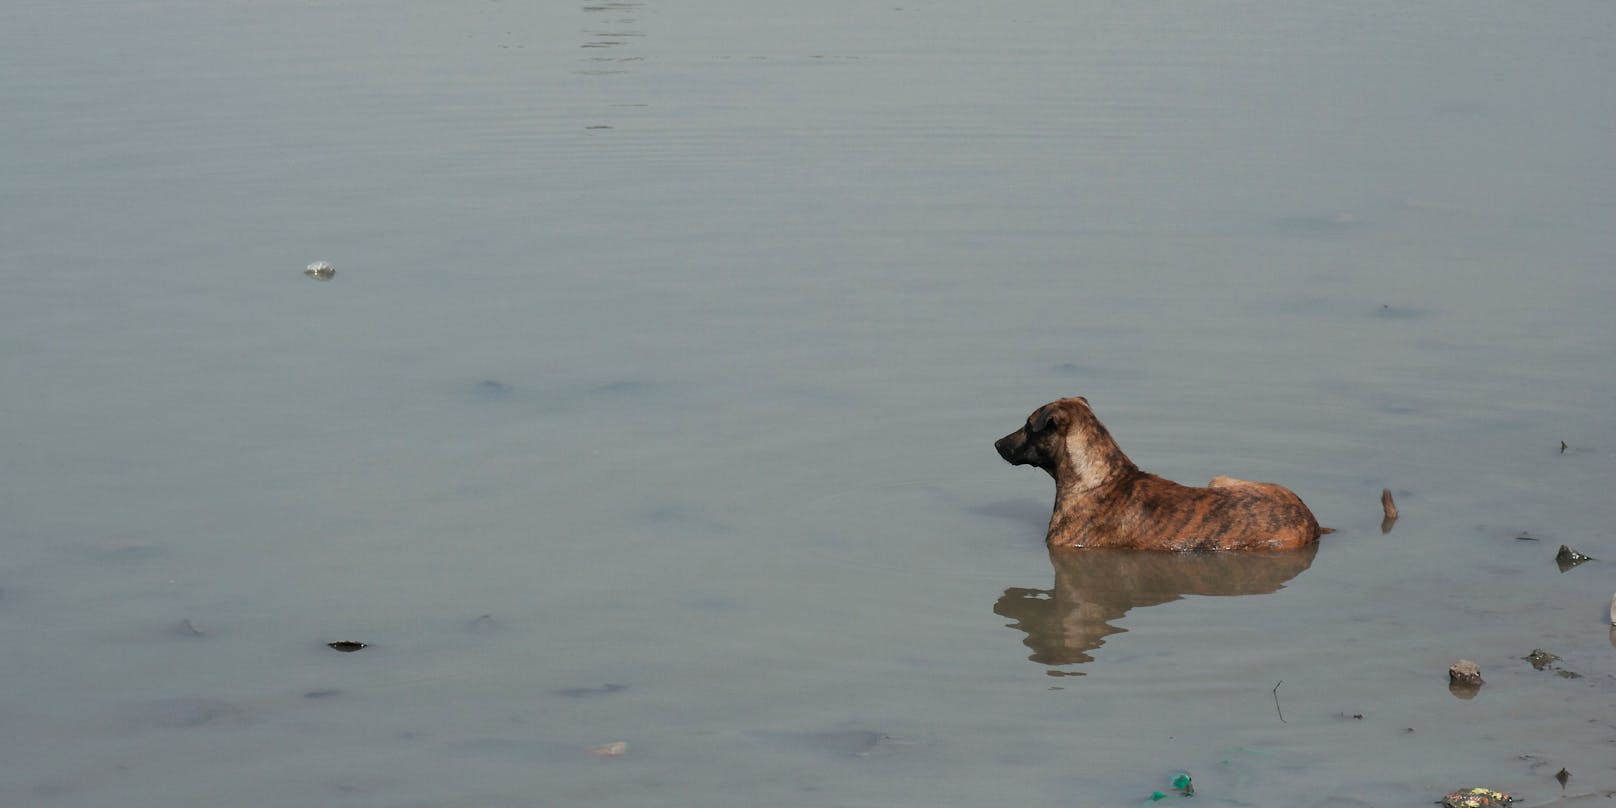 Tragischer Unfall in Indien: Ein Geschwisterpaar wollte ihren Hund baden und ertrank dabei in dem Teich.